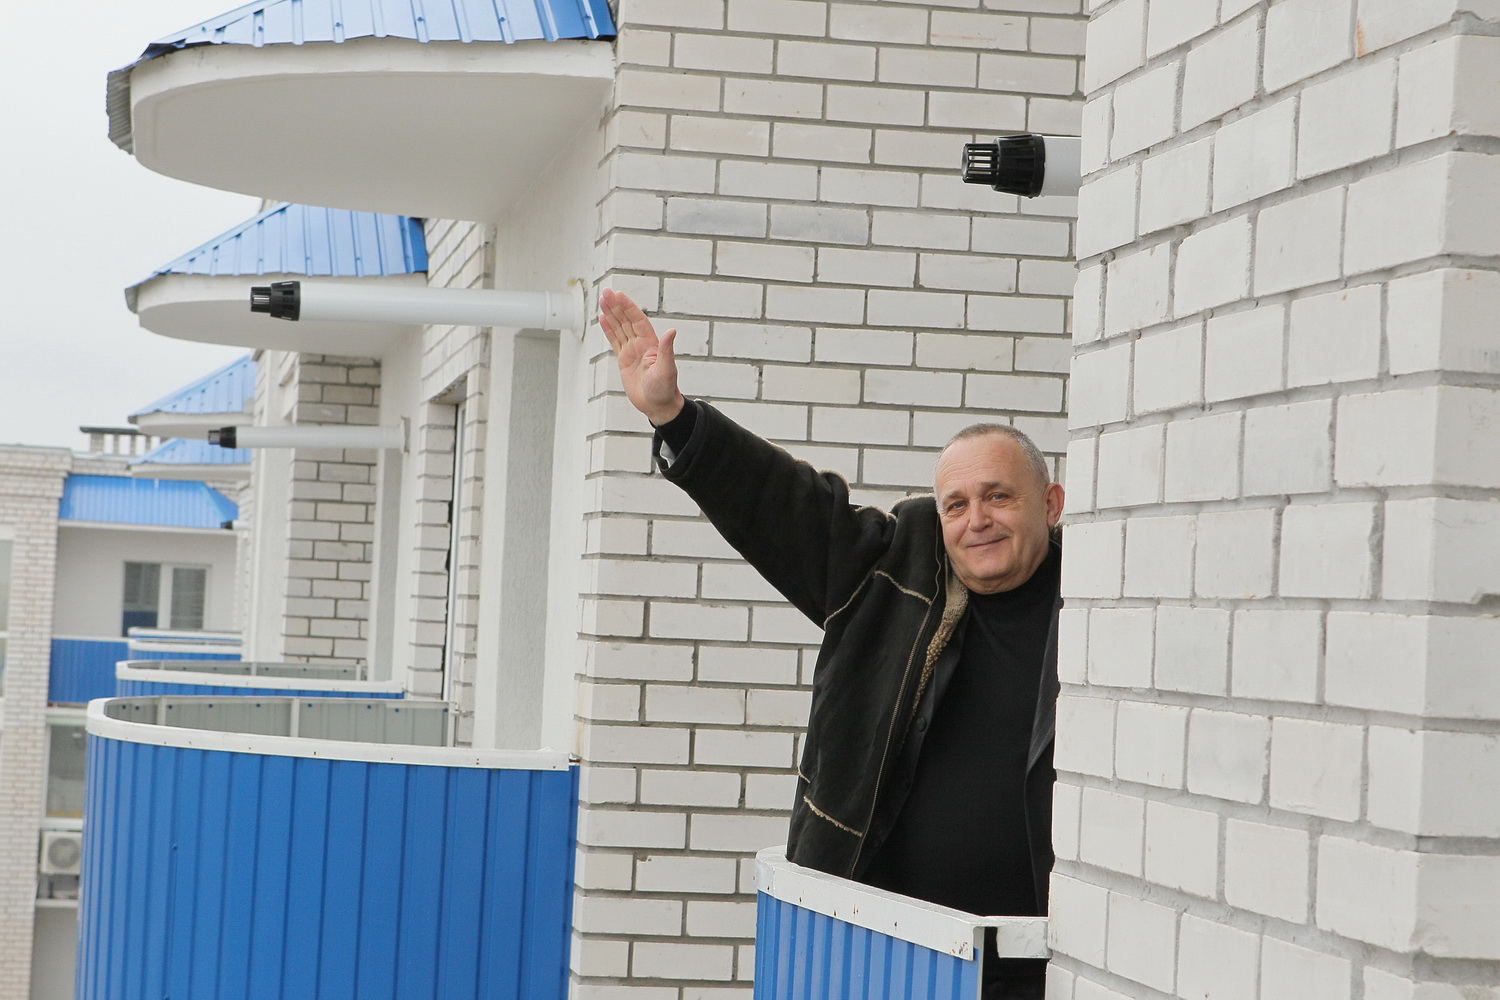 Військовослужбовці Чернігівського гарнізону отримали квартири (Фото)